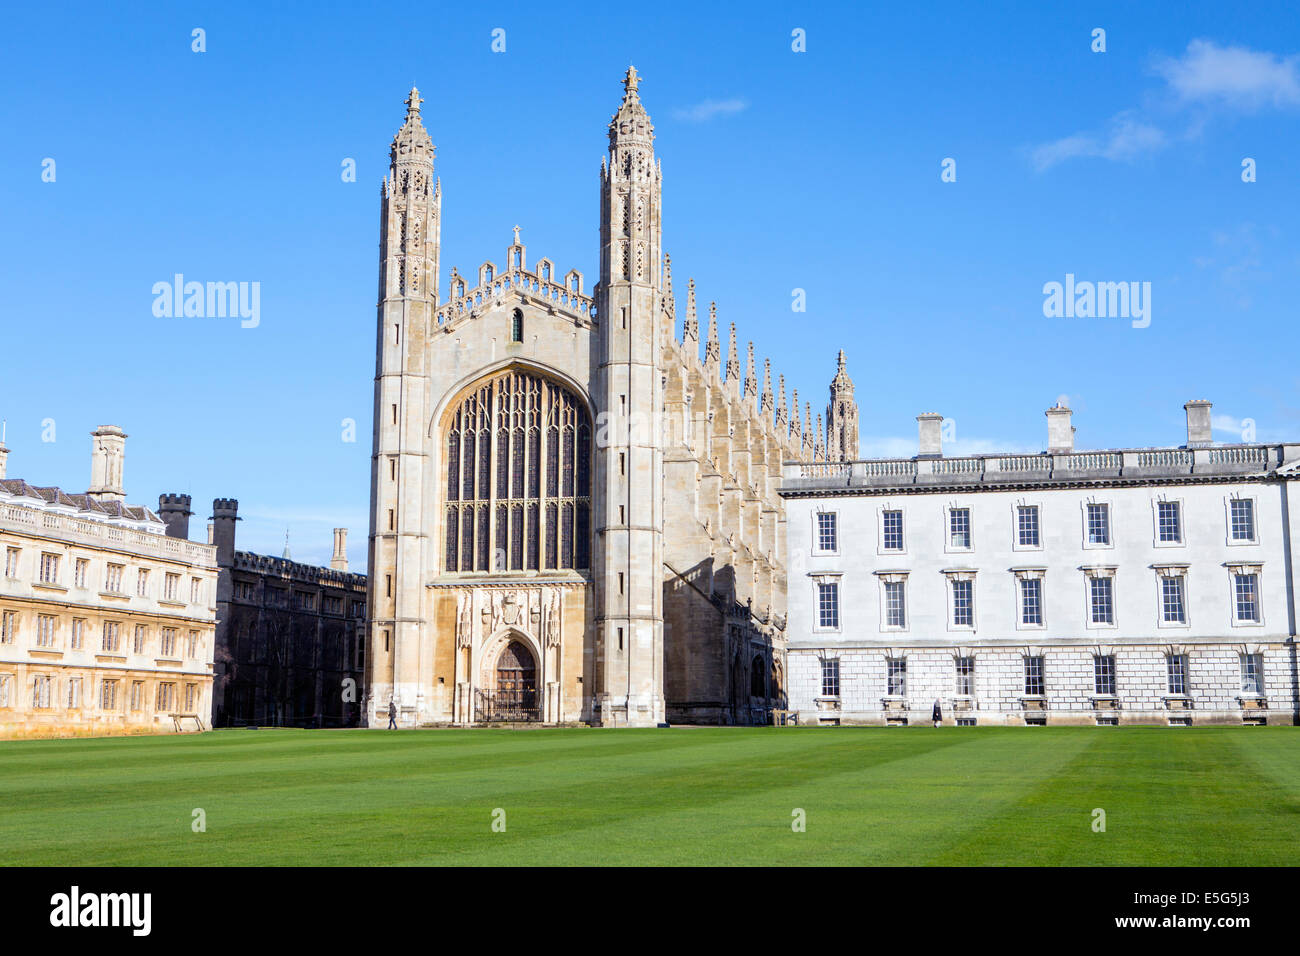 Reino Unido, Cambridge, Universidad de Cambridge, Kings College que muestra la famosa capilla gótica y el edificio James Gibbs, del río Cam Foto de stock